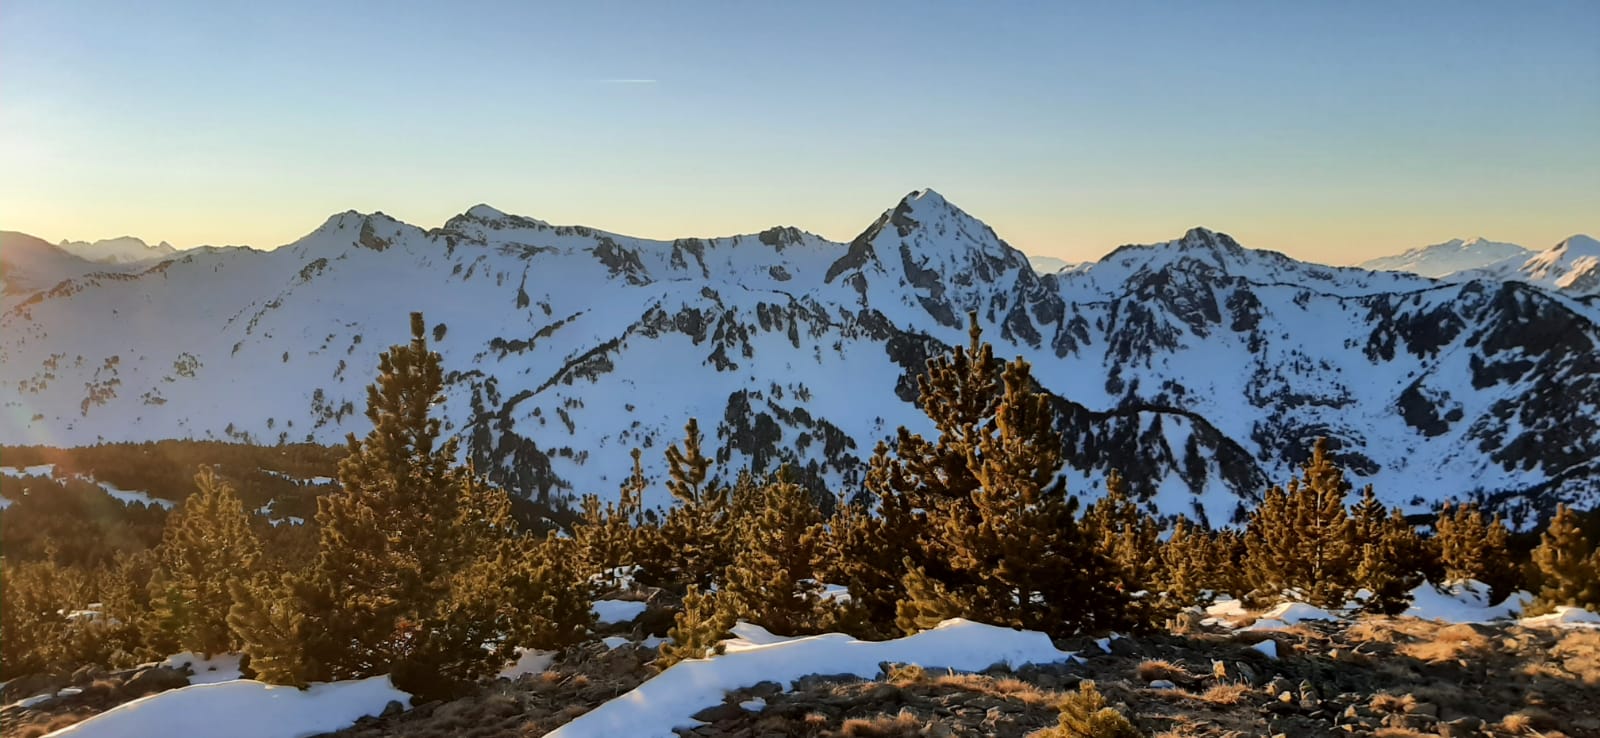 Panorámica desde la cima del Pic de Ginebre, 2.382 mts., en el centro derecha el Roc Blanc, y en el centro izquierda el Pic de La Tribuna y Pic de Baxouillade